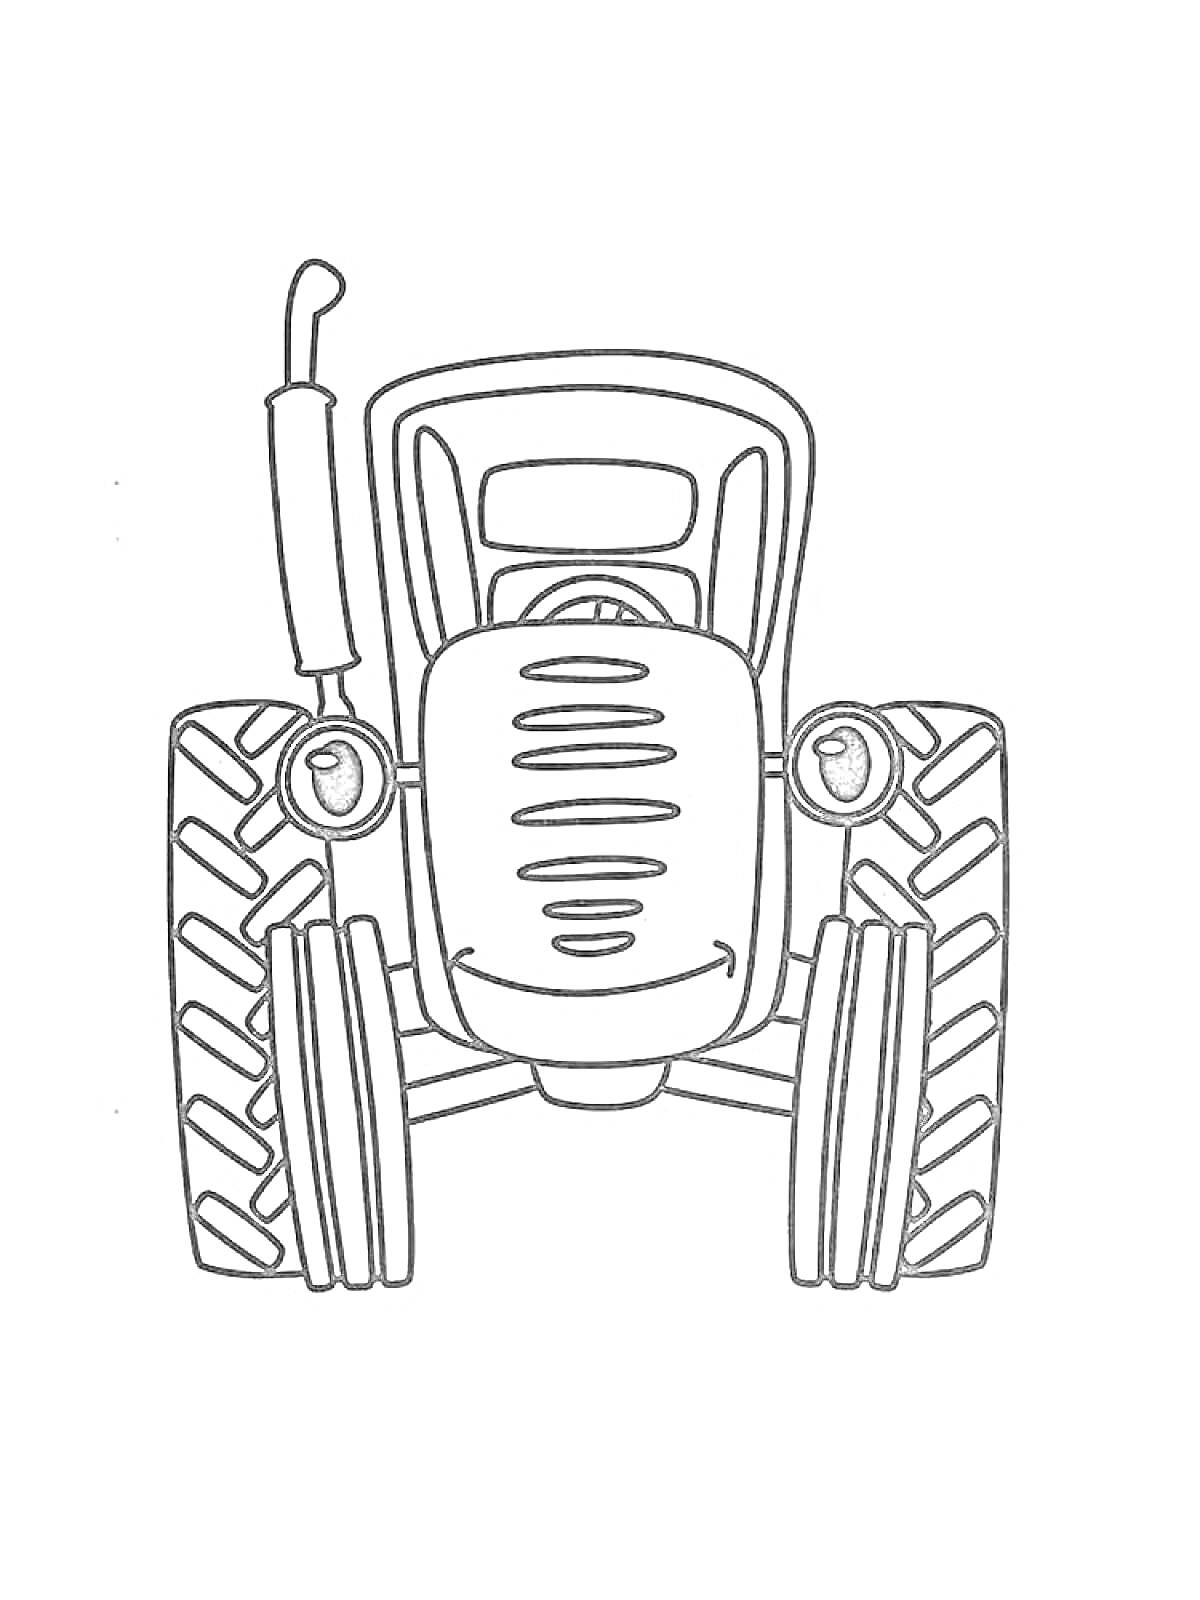 Трактор, вид спереди, с большими колесами, фарой и трубой на капоте